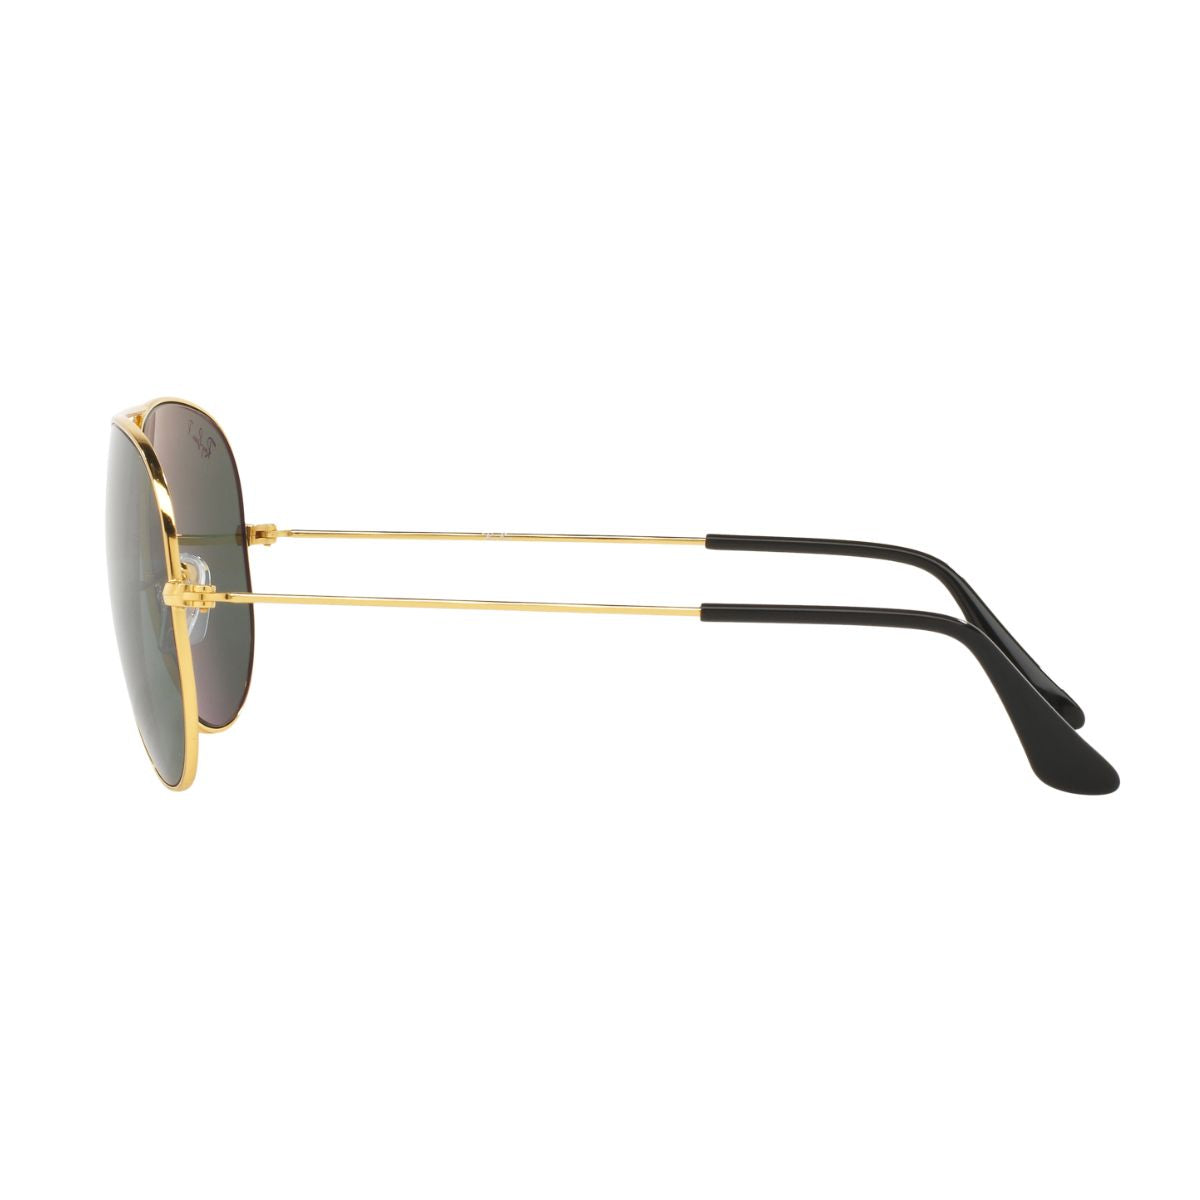 "Best Rayban 3025 001/58 Aviator Sunglasses For Men's At Optorium"